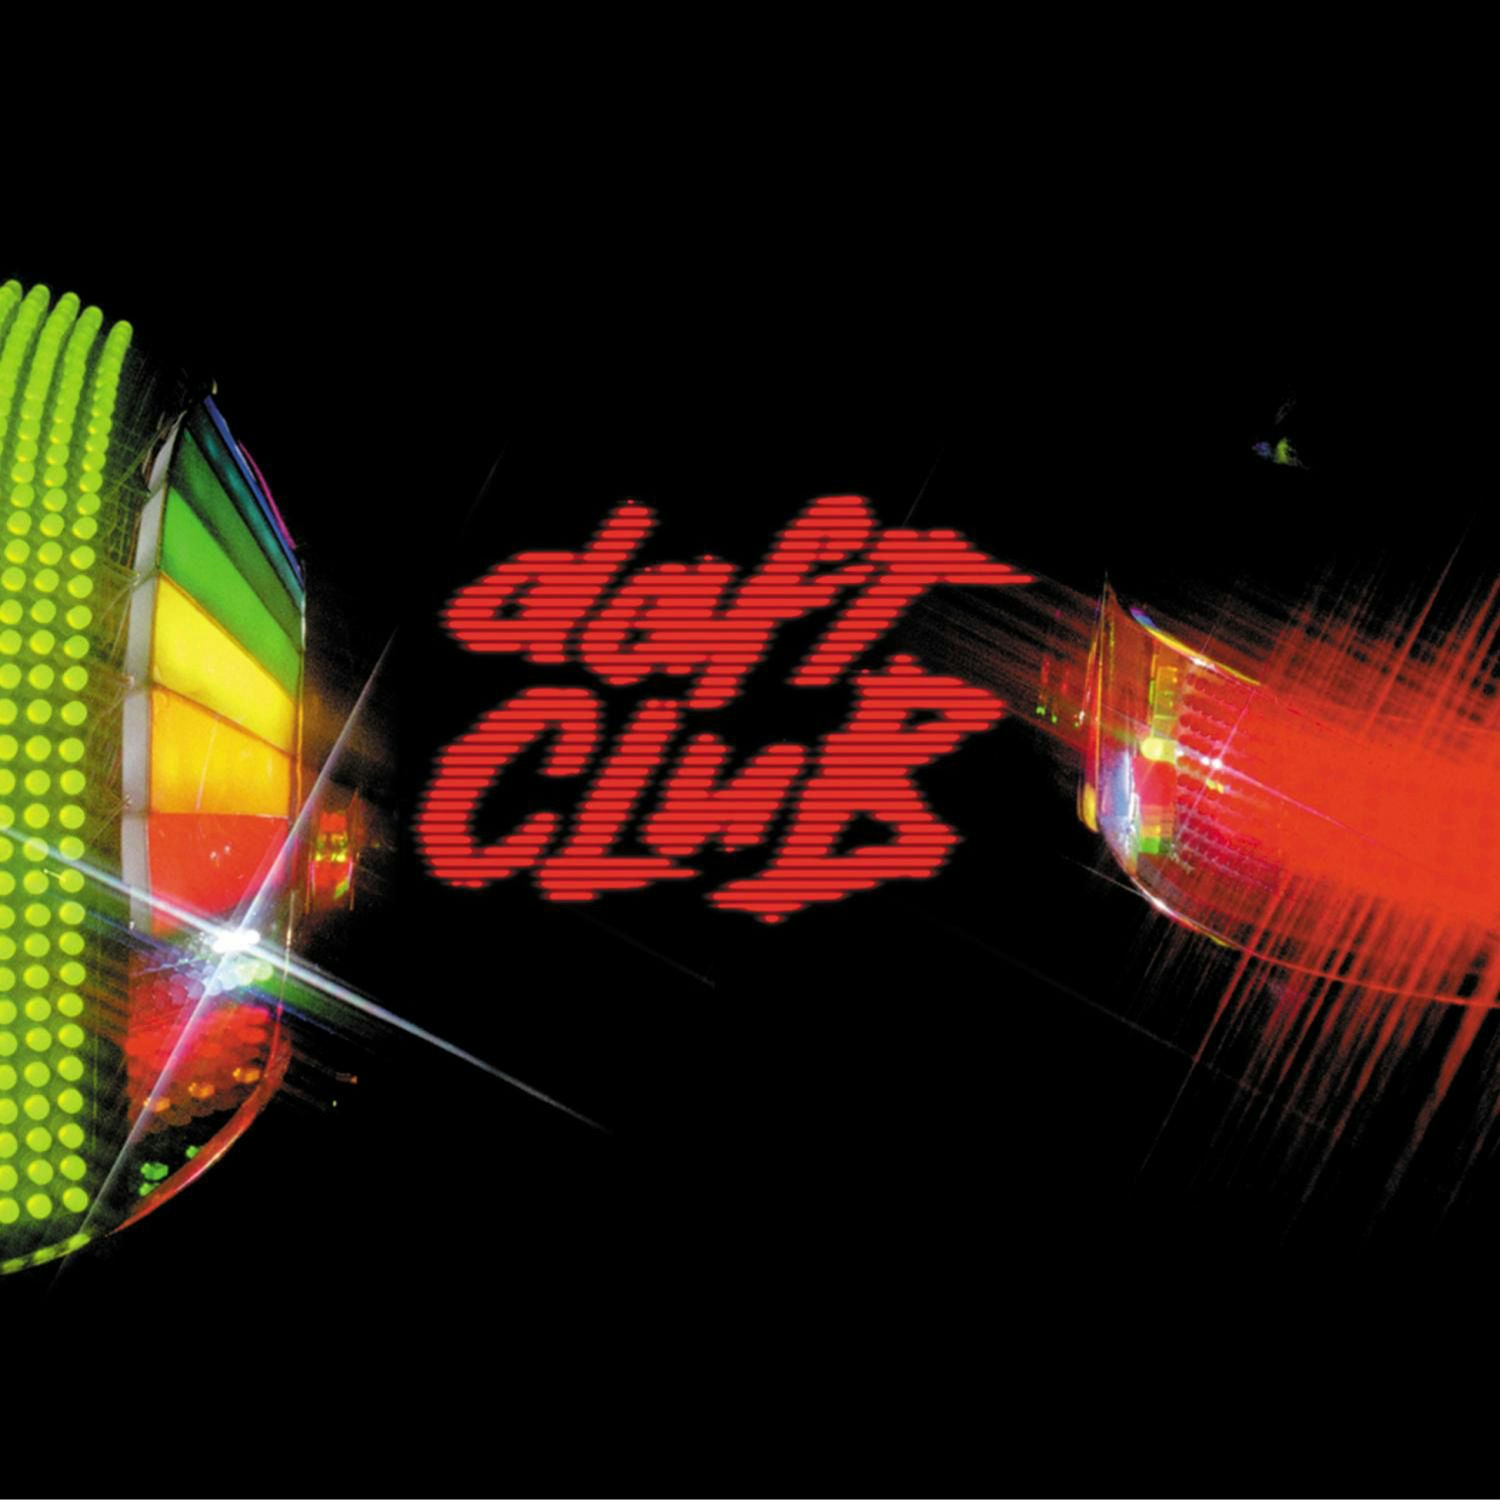 Album artwork for Album artwork for Daft Club by Daft Punk by Daft Club - Daft Punk